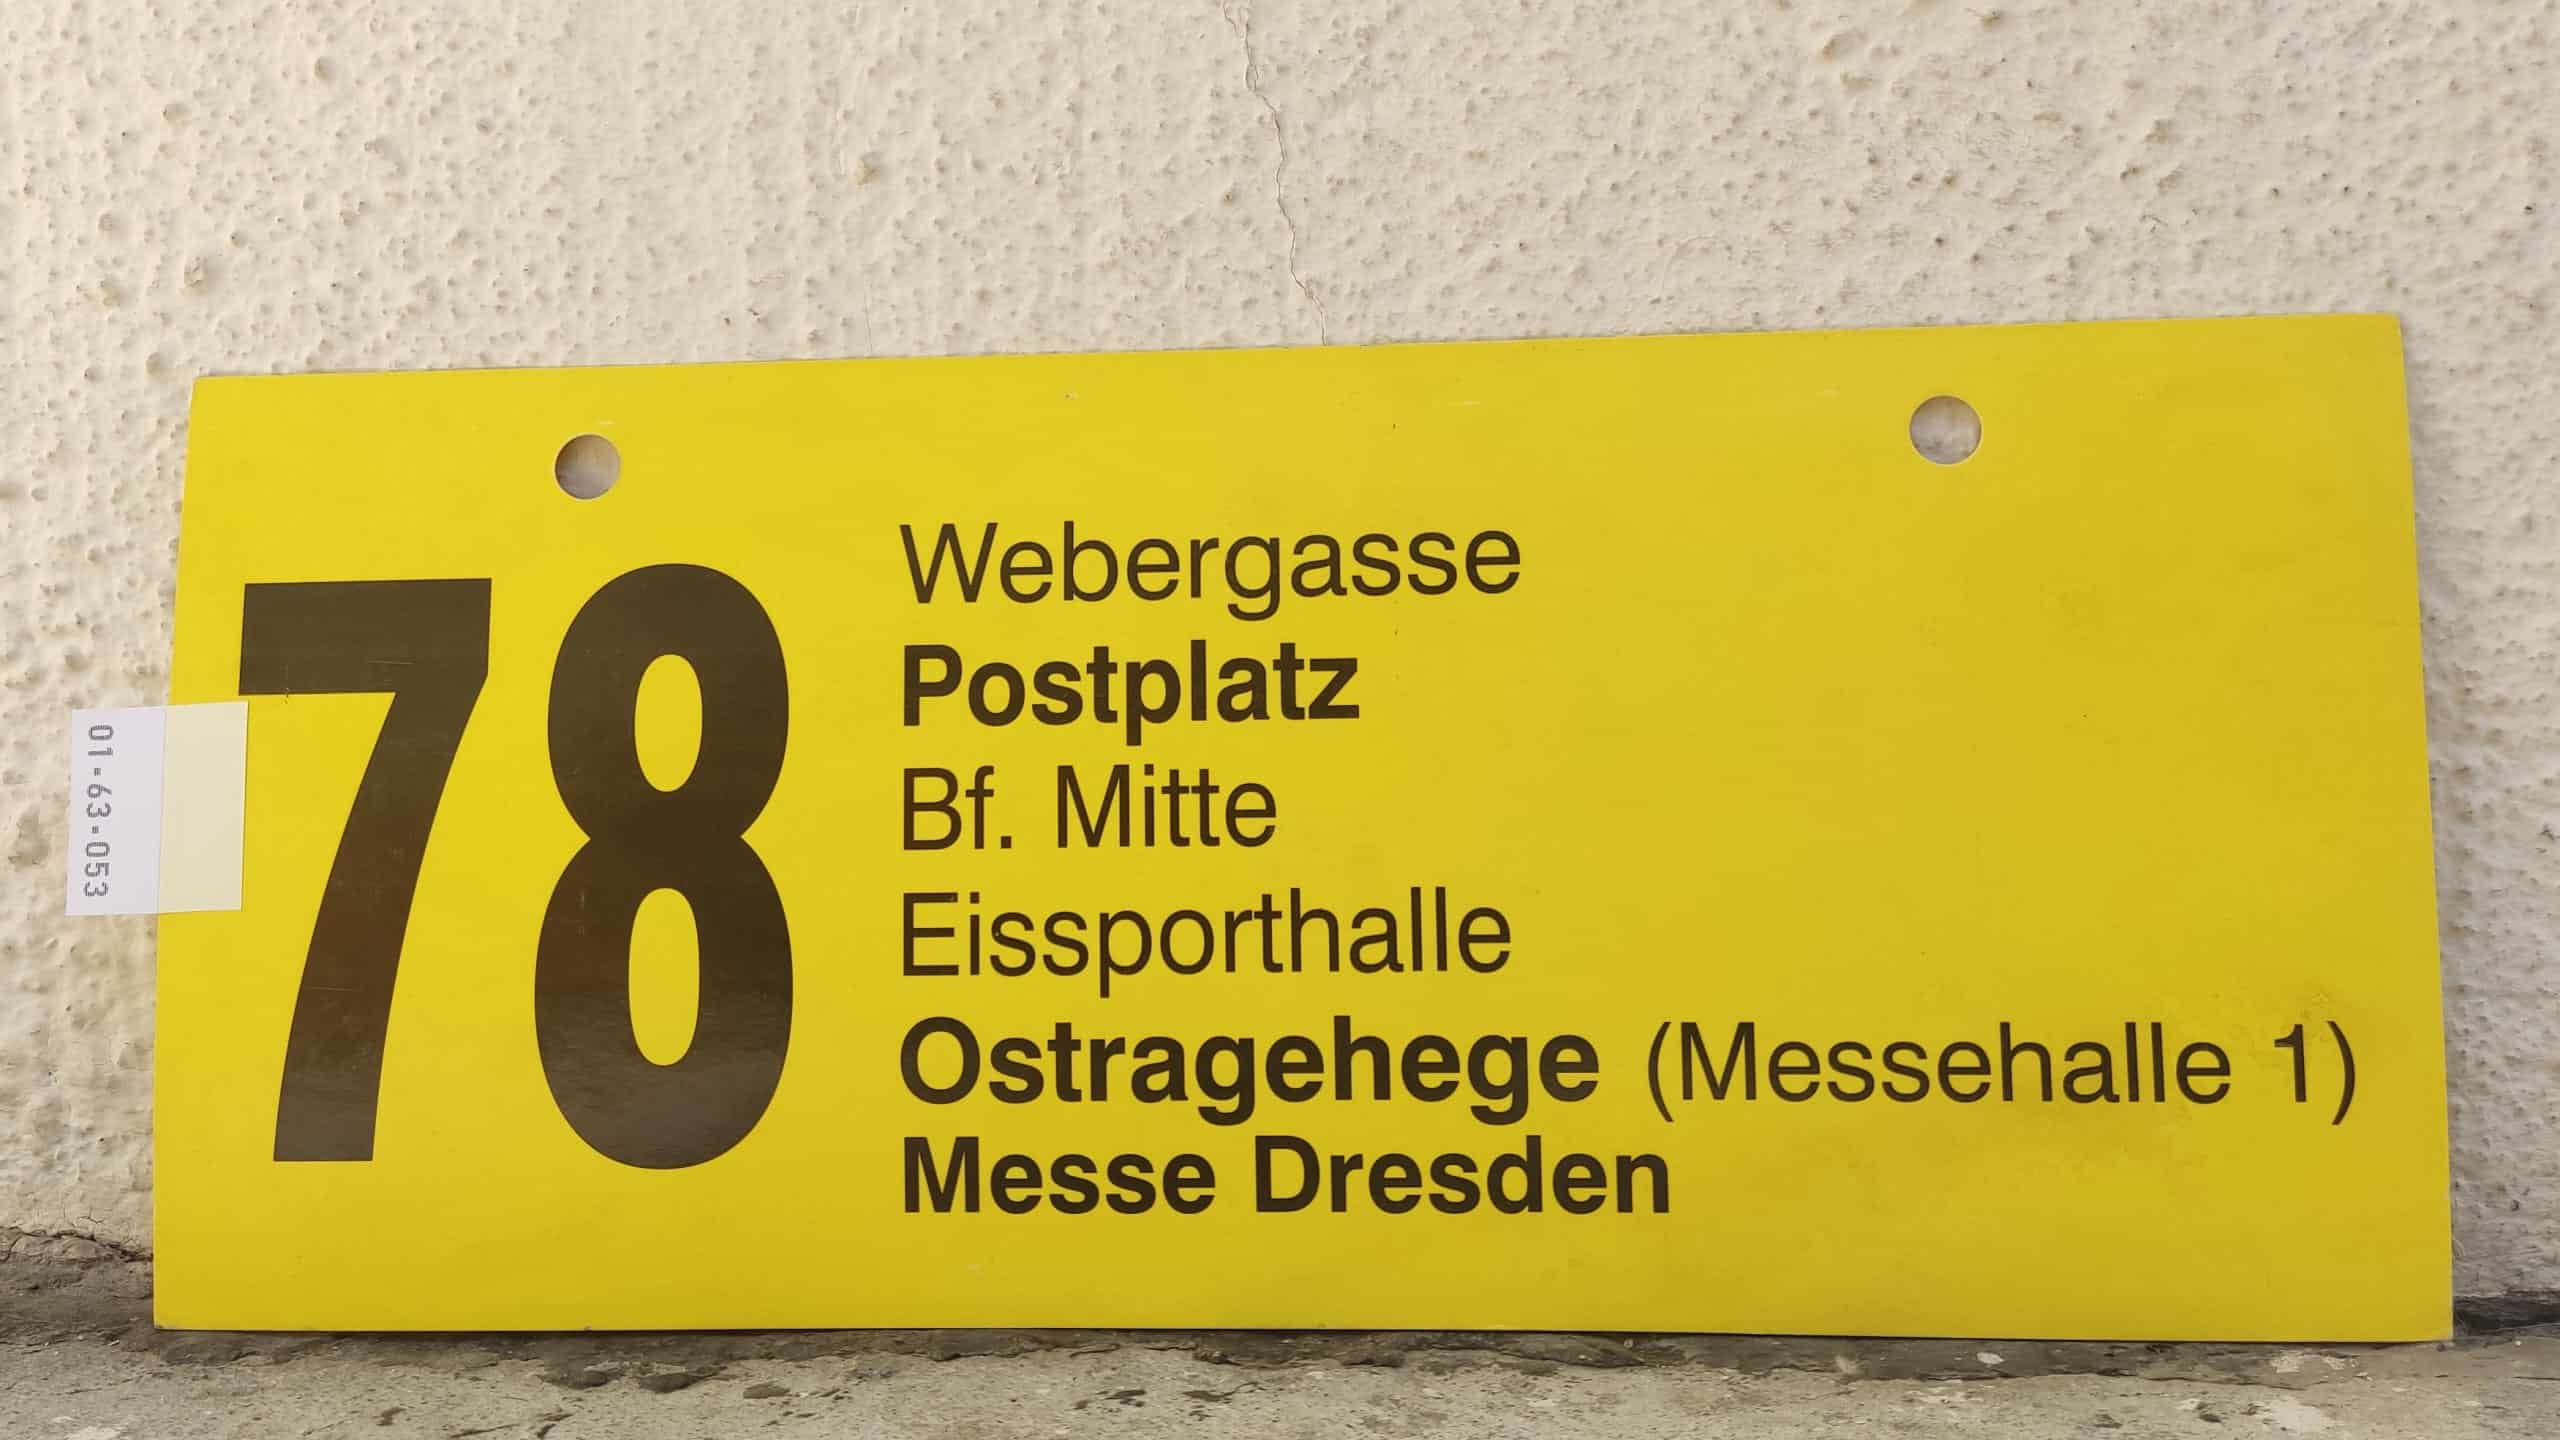 78 Webergasse – Postplatz – Ostragehege (Messehalle 1) – Messe Dresden